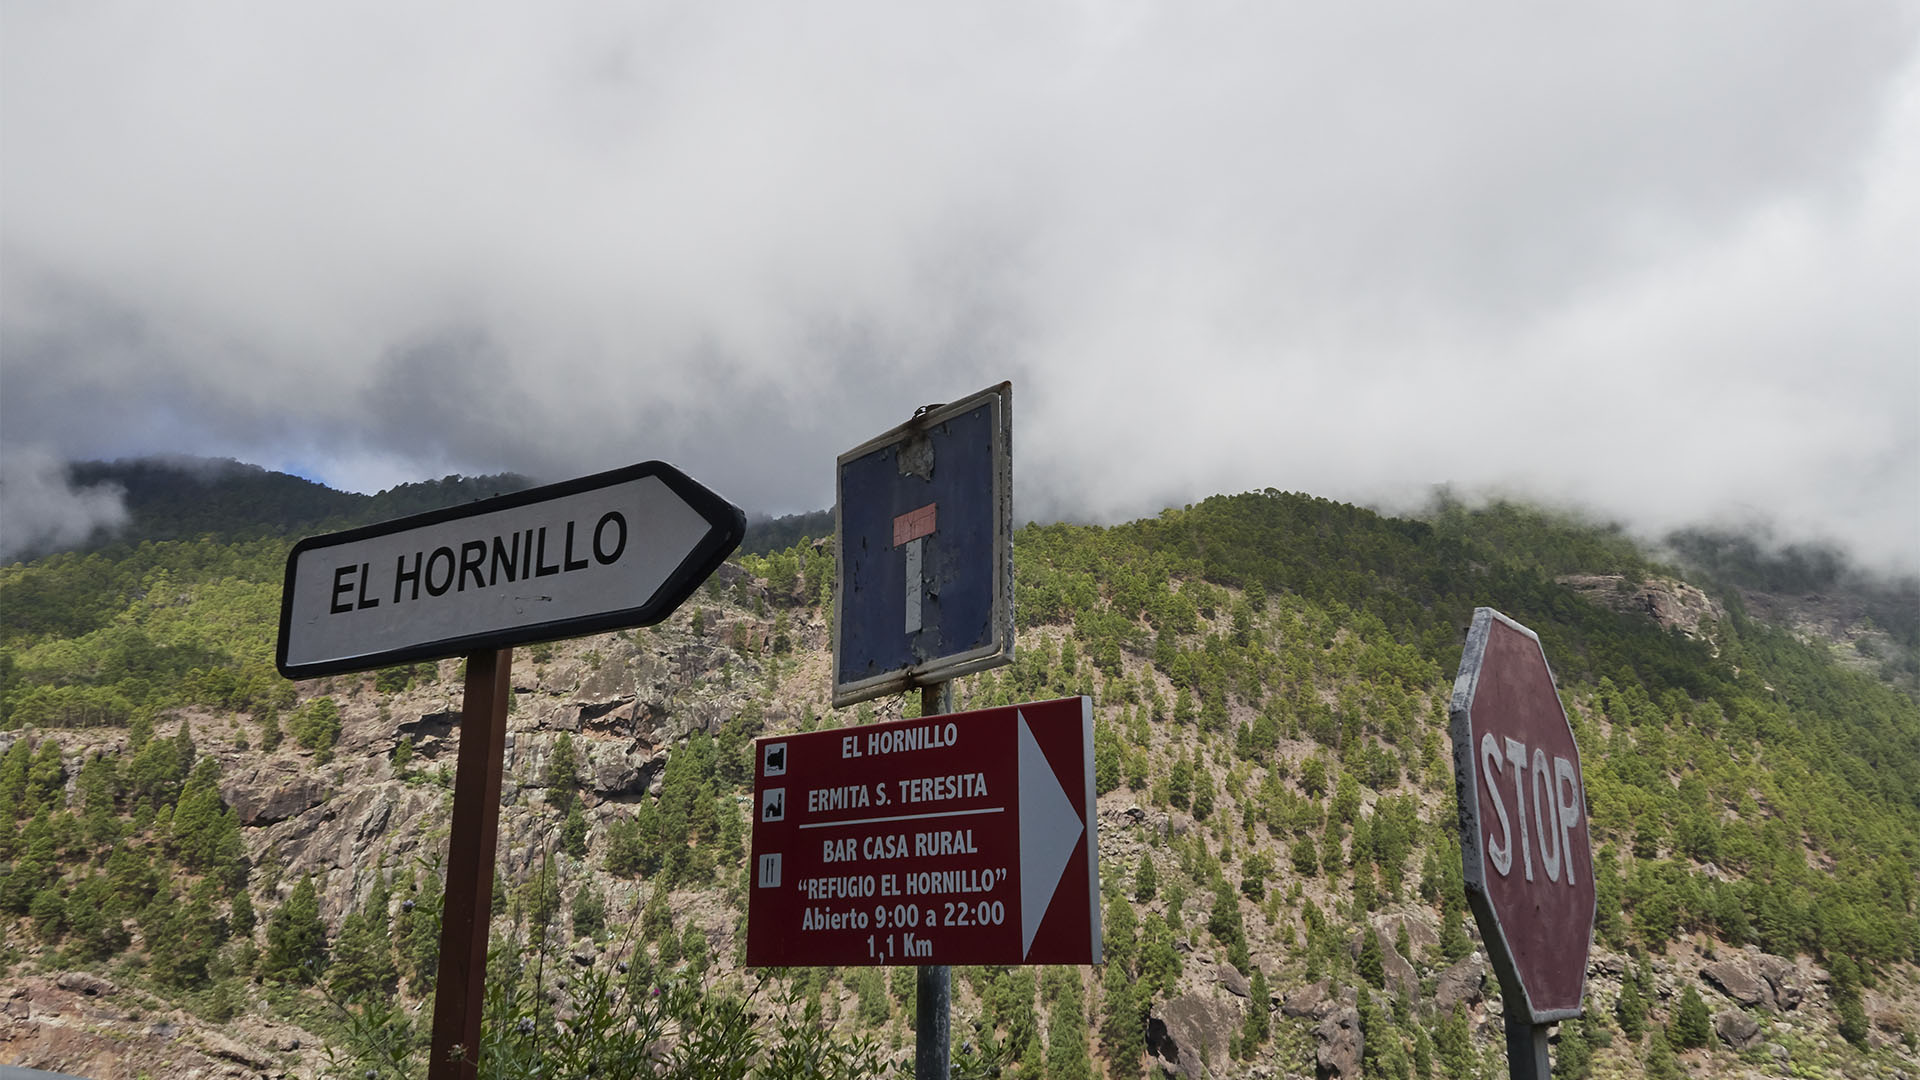 Die wilde kleine Strasse, die von der GC-217 ins Dorf El Hornillo hinunter führt.